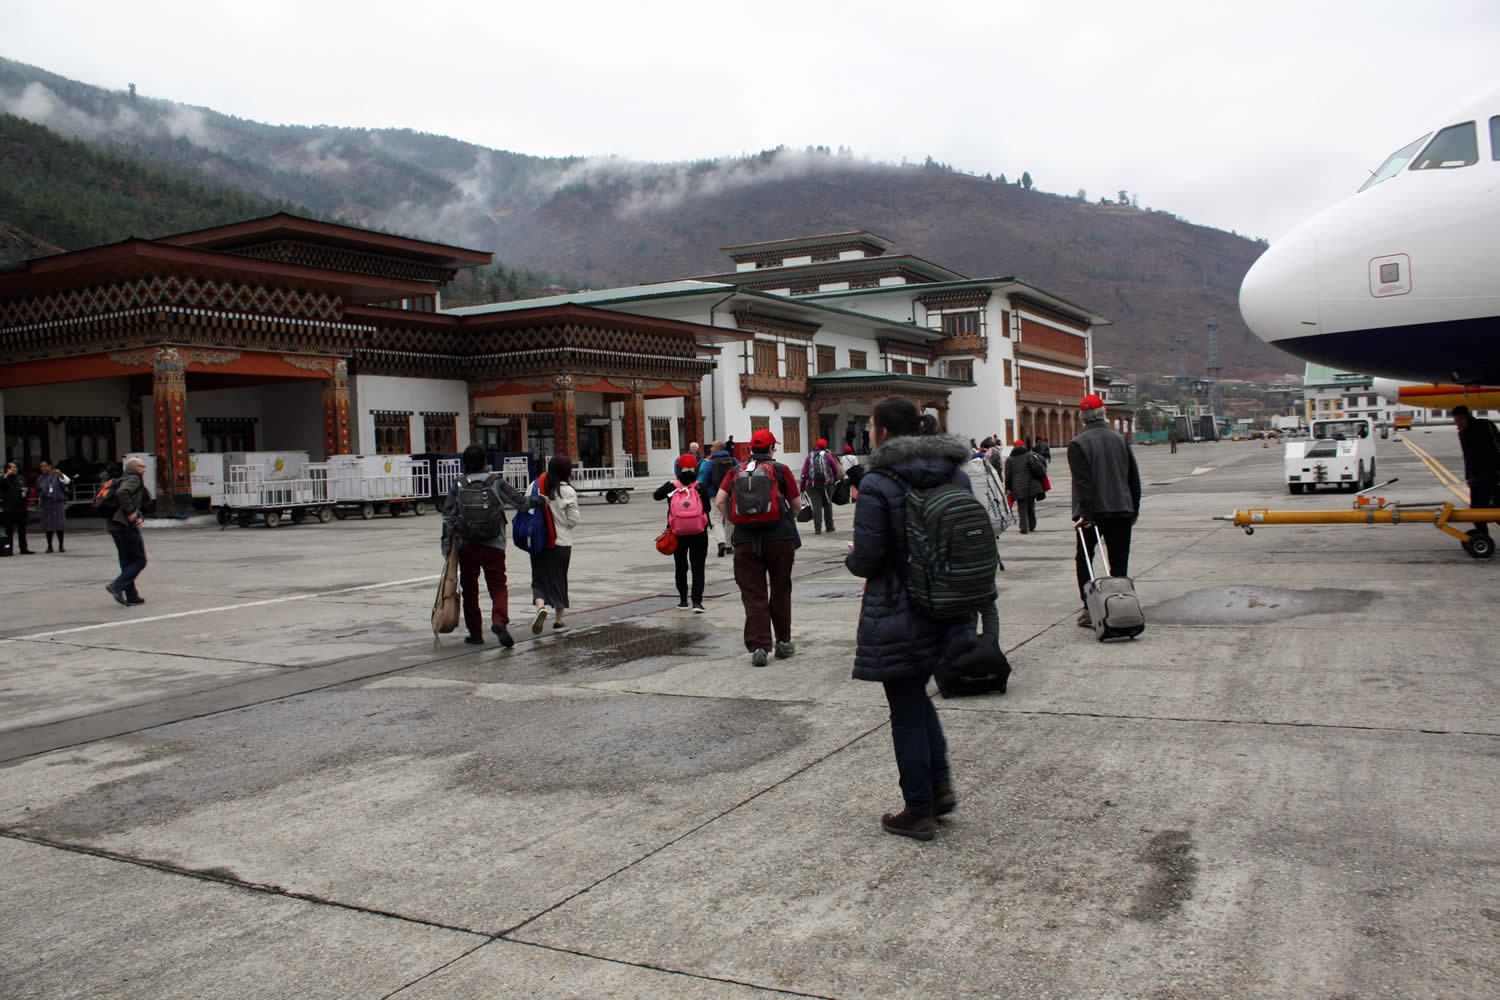 Arrival at Bhutan's main airport in Paro.